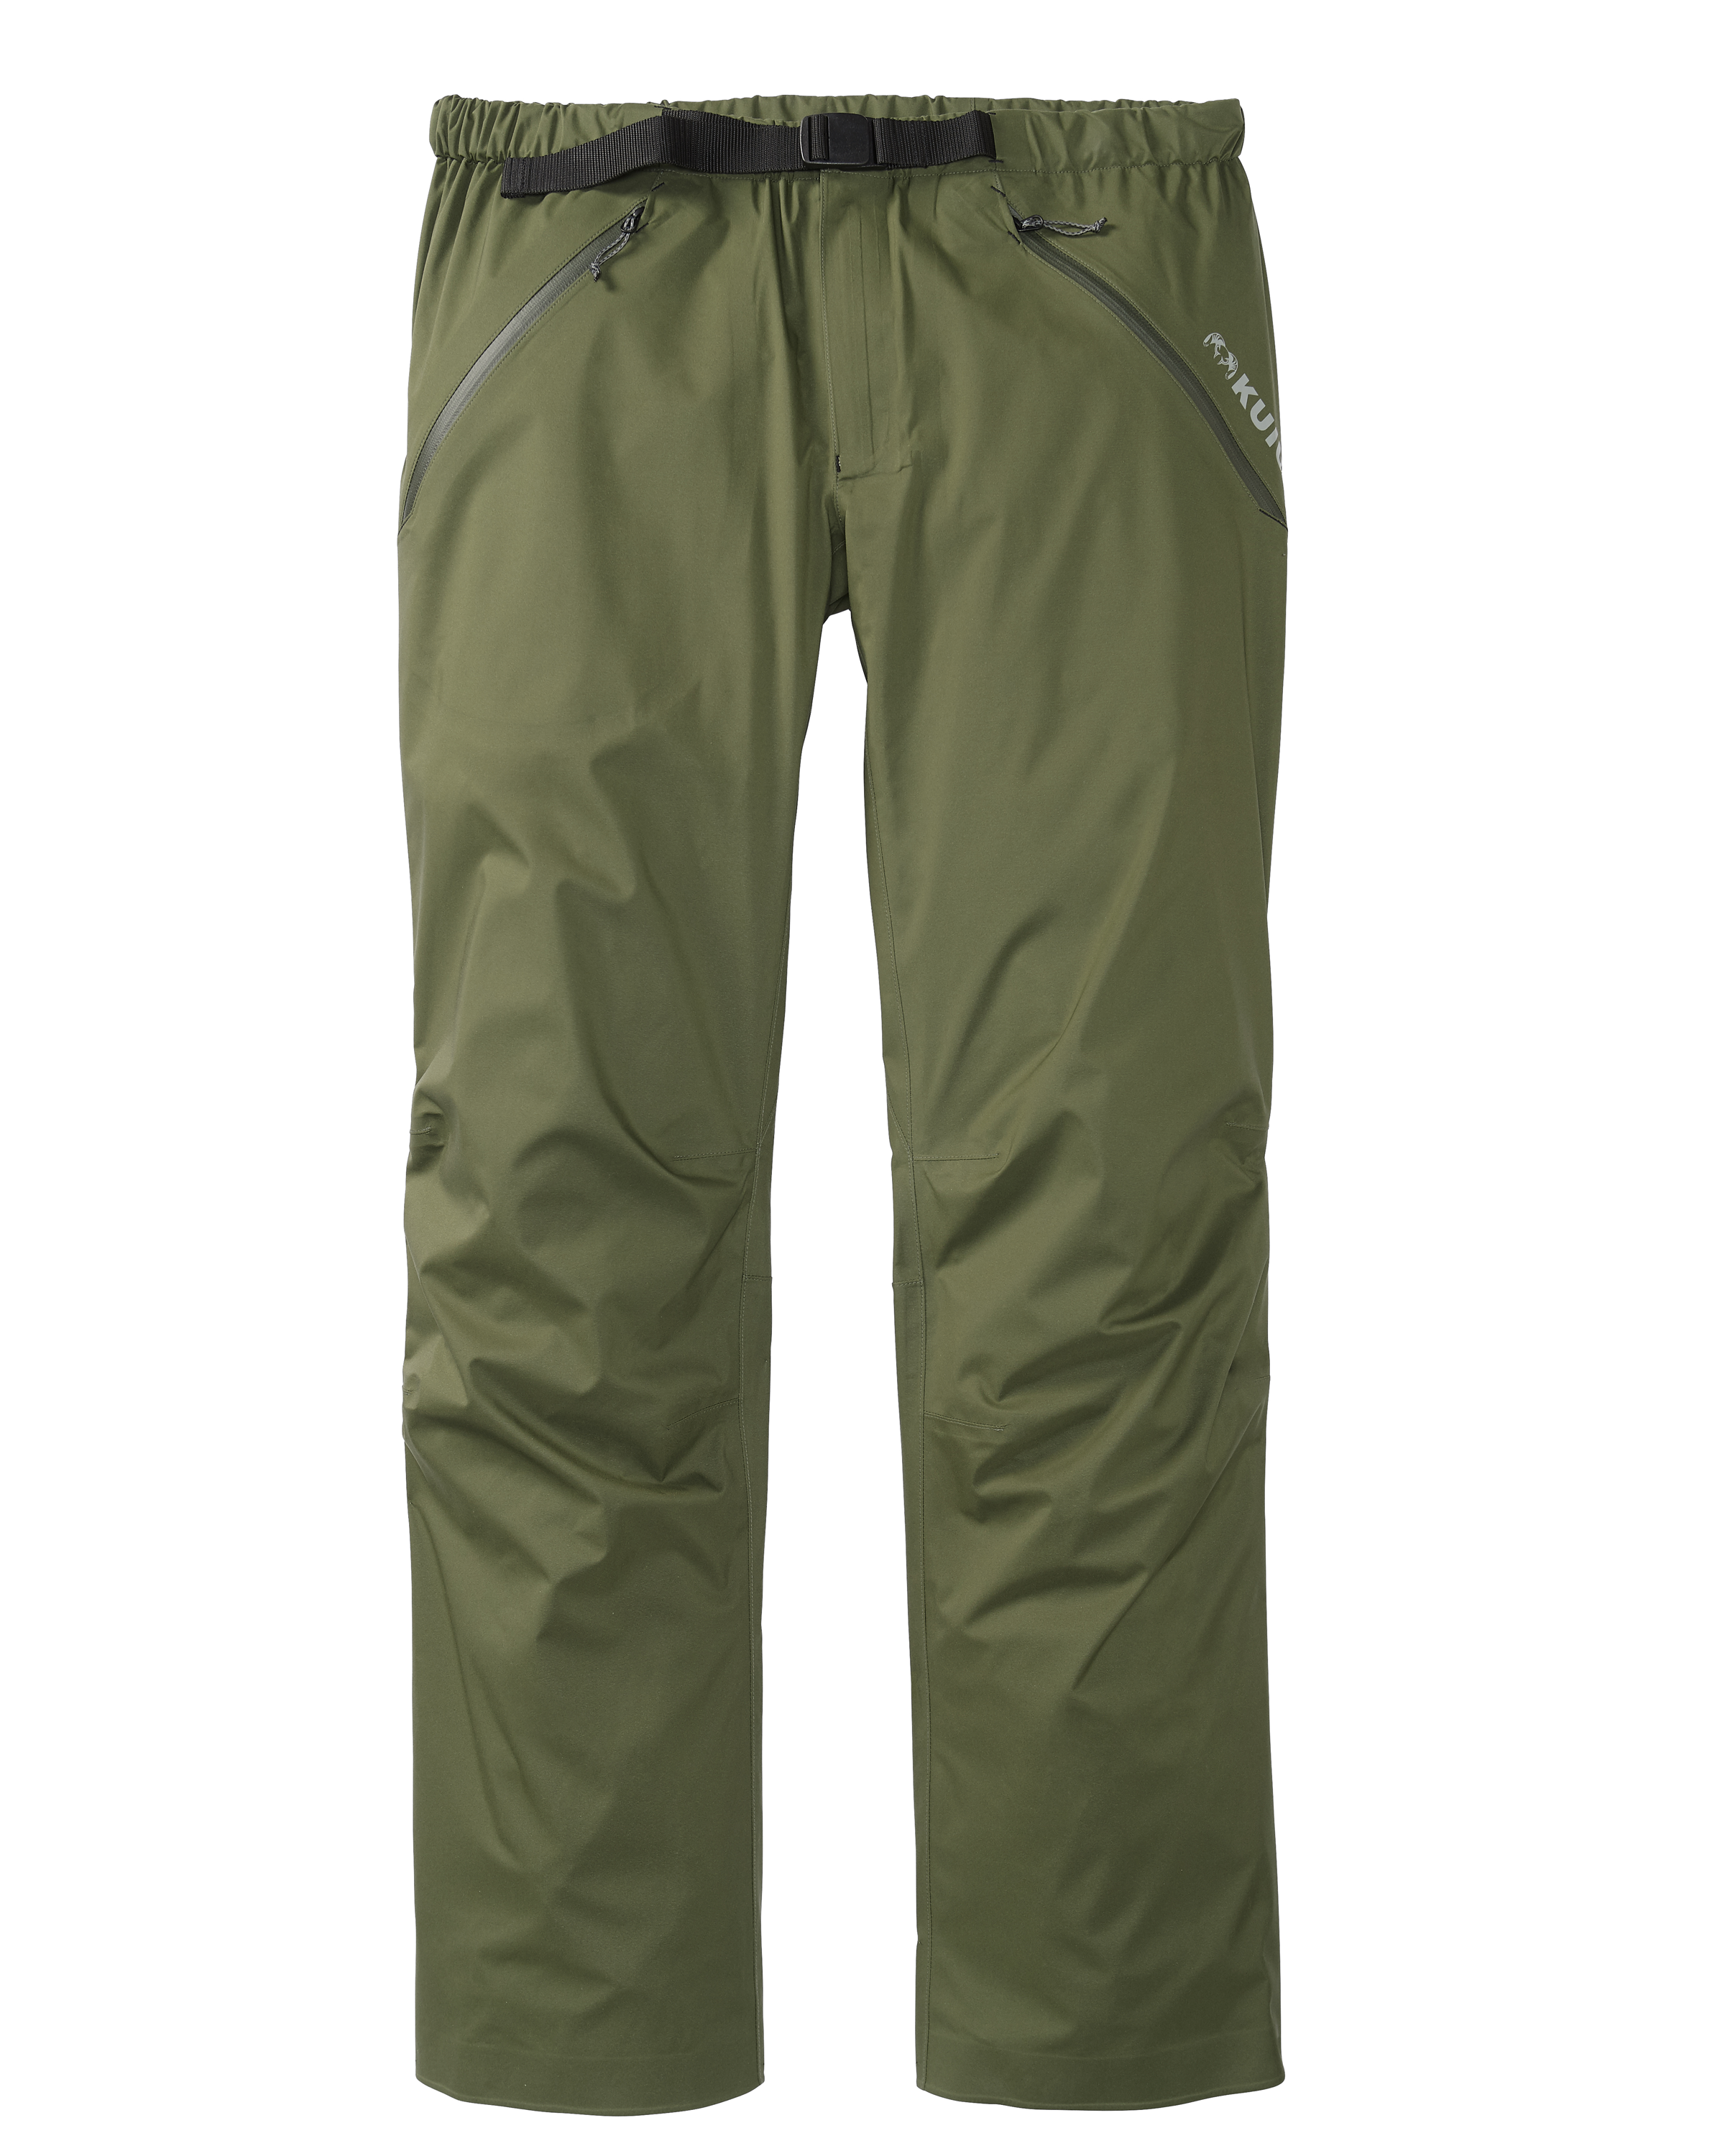 KUIU Northridge Rain Hunting Pant in Olive | Size 3XL